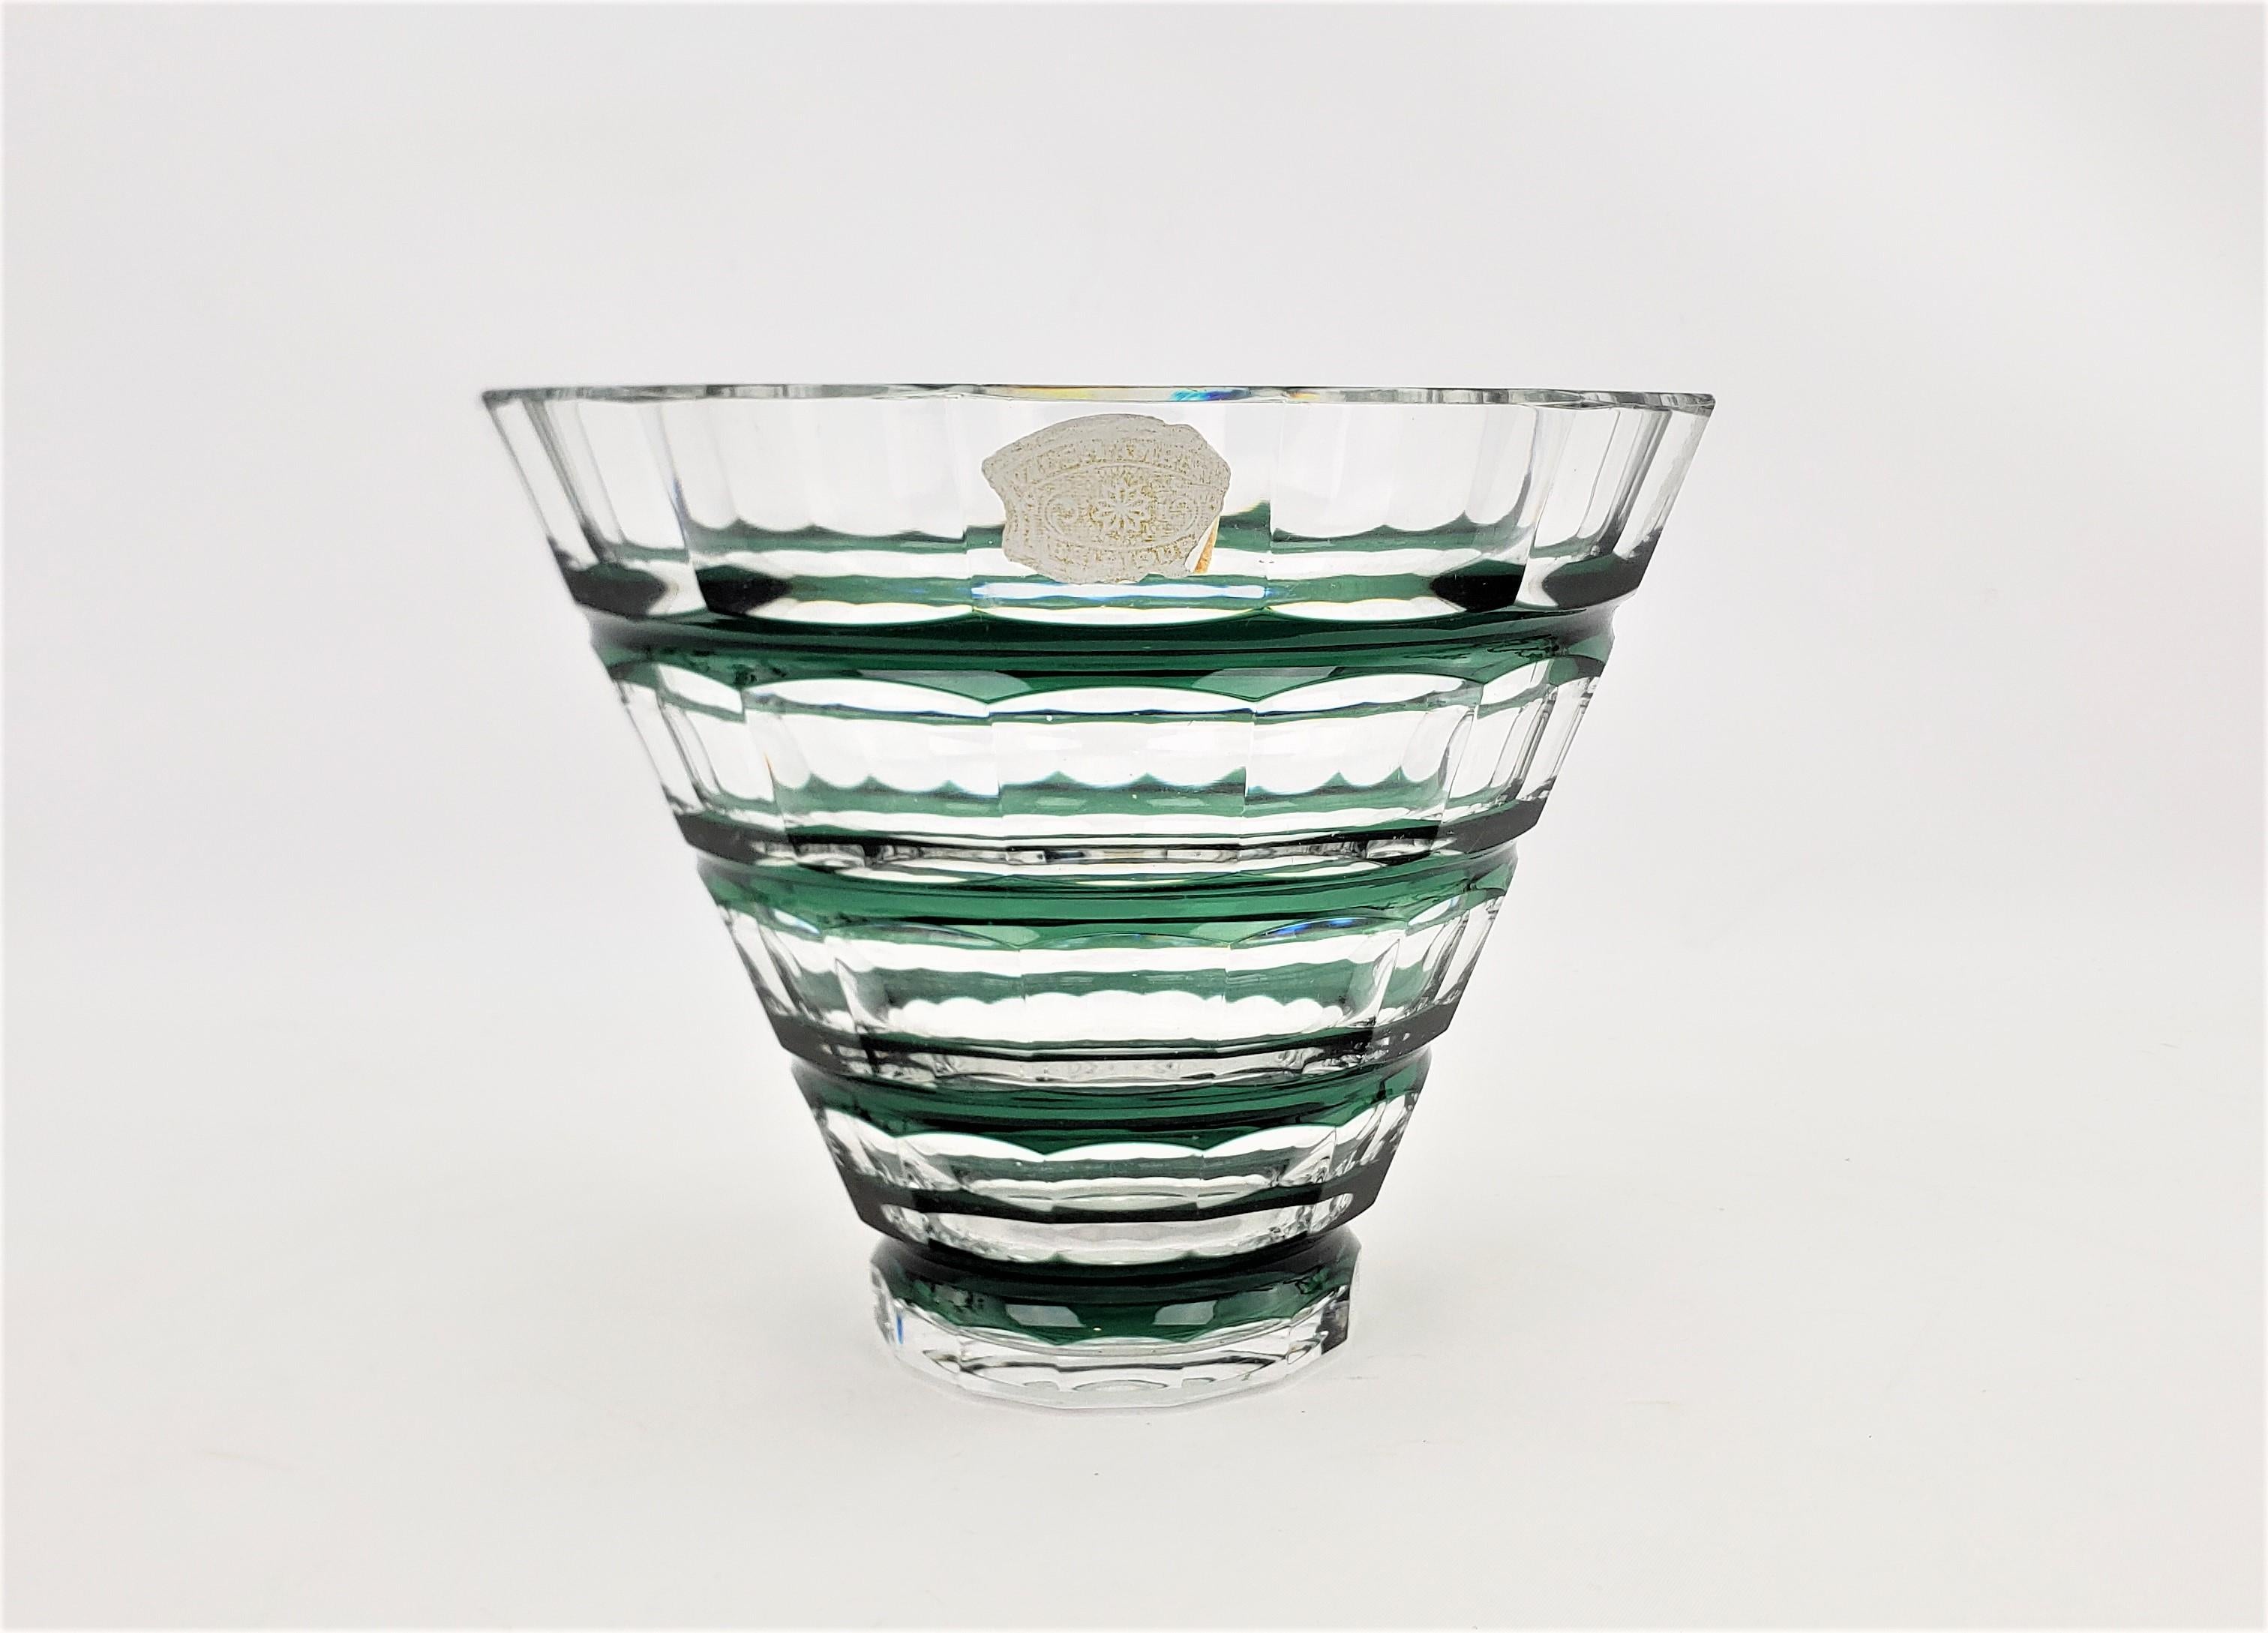 Diese Vase oder Schale aus geschliffenem Kristall wurde von der renommierten belgischen Glasfabrik Val Saint Lambert um 1965 im Stil der Jahrhundertmitte hergestellt. Die Schale ist aus klarem Kristallglas mit tiefgrünen Akzenten gefertigt. Die Vase